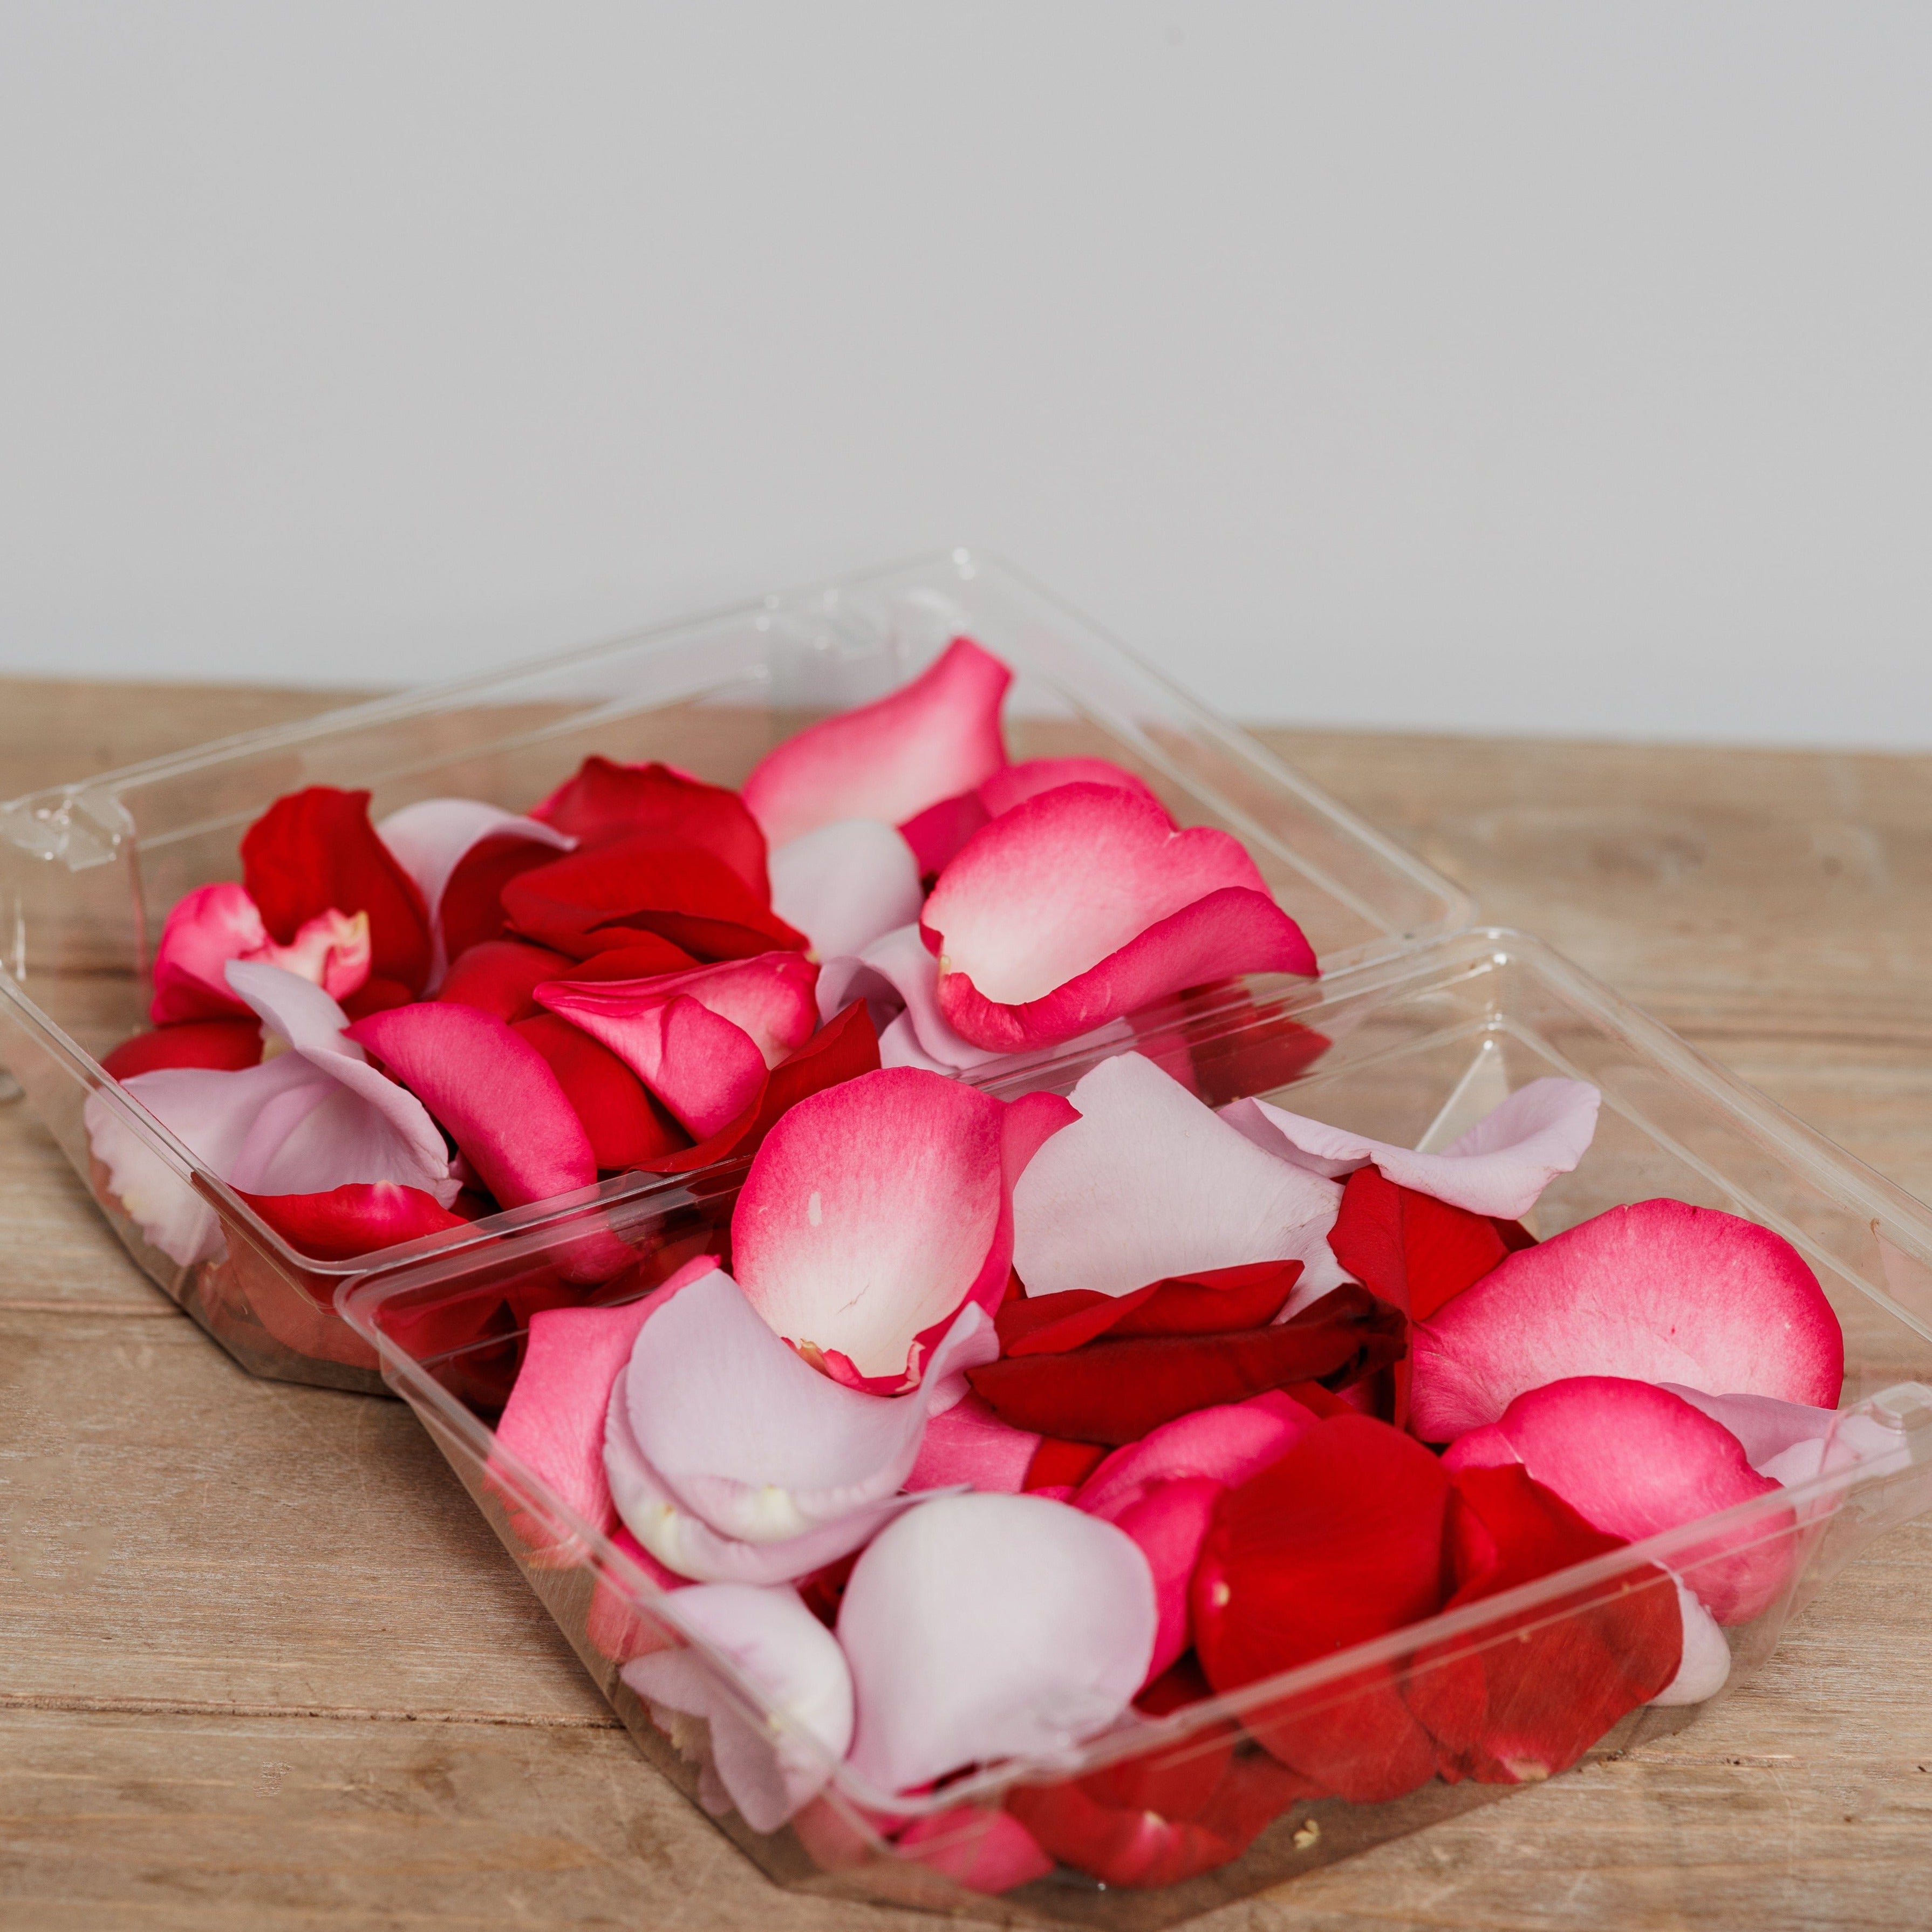 Box of mixed rose petals